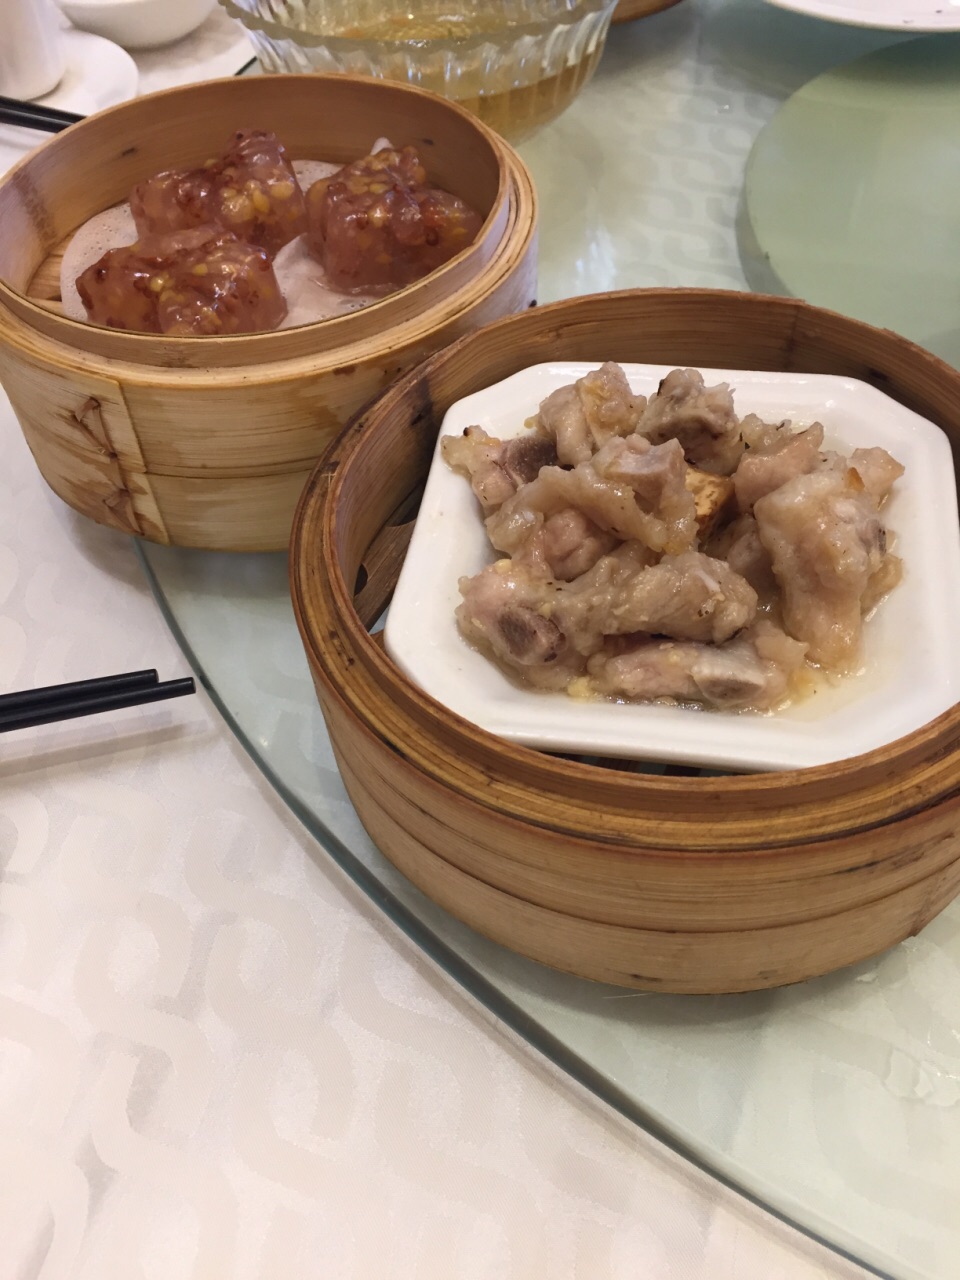 龙江山庄菜单图片